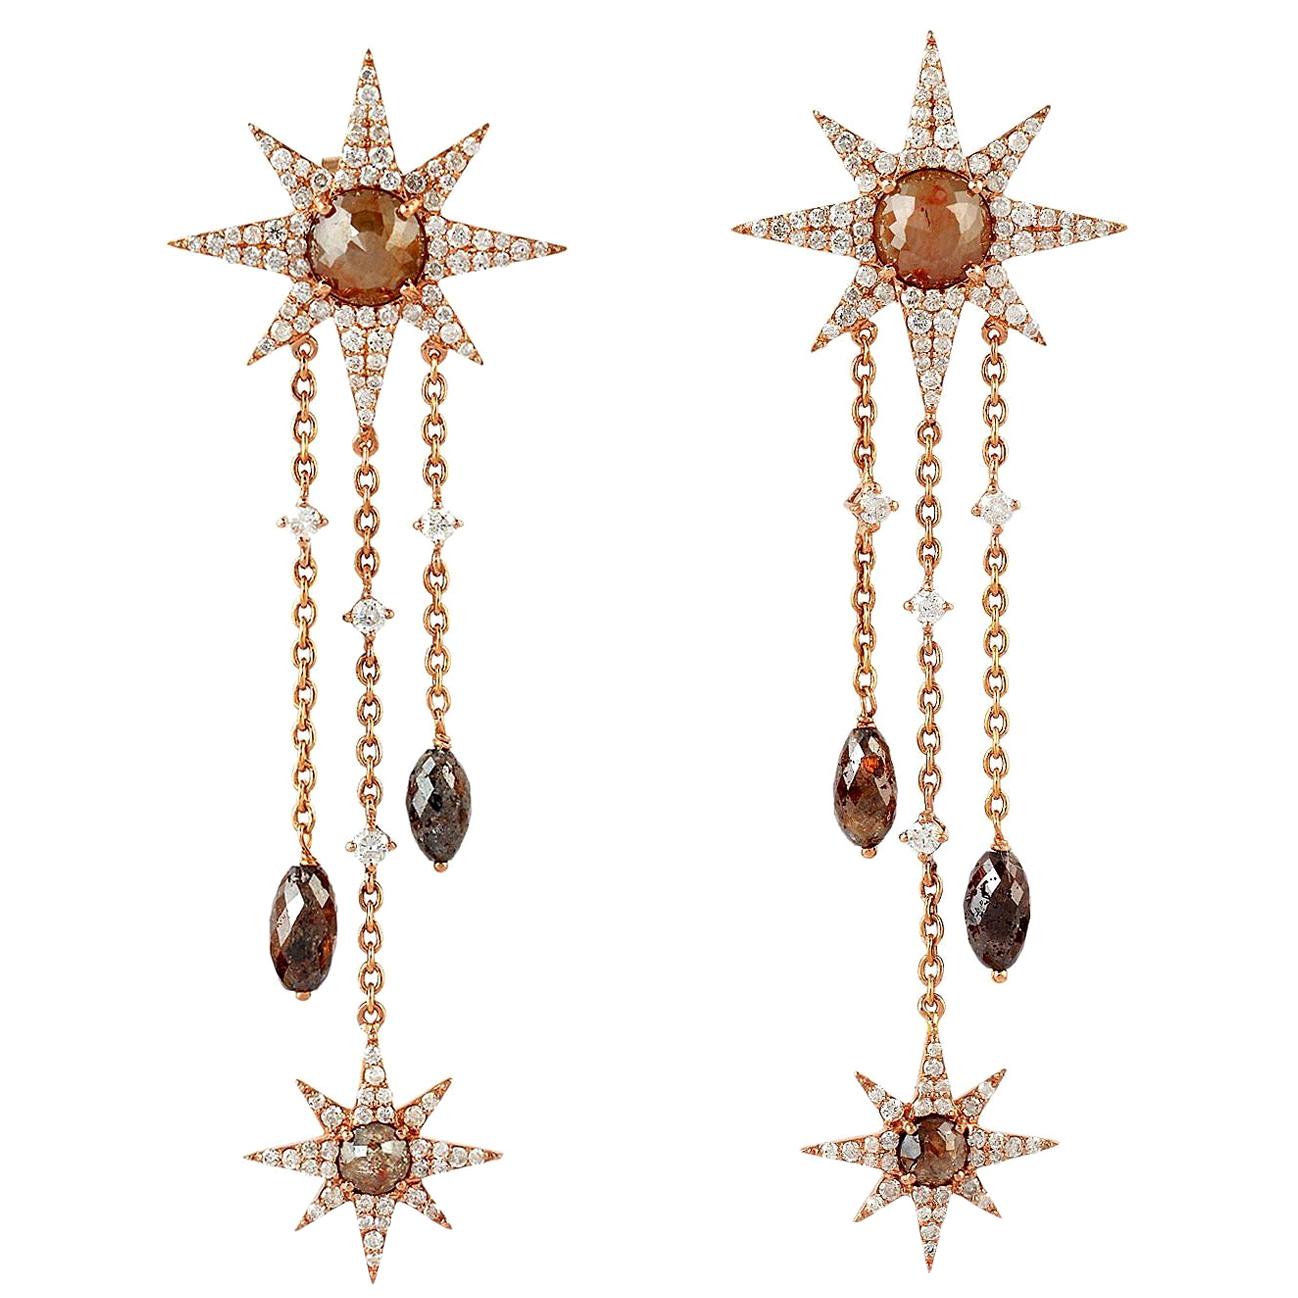 7.79 Carat Fancy Diamond 18 Karat Gold Star Earrings